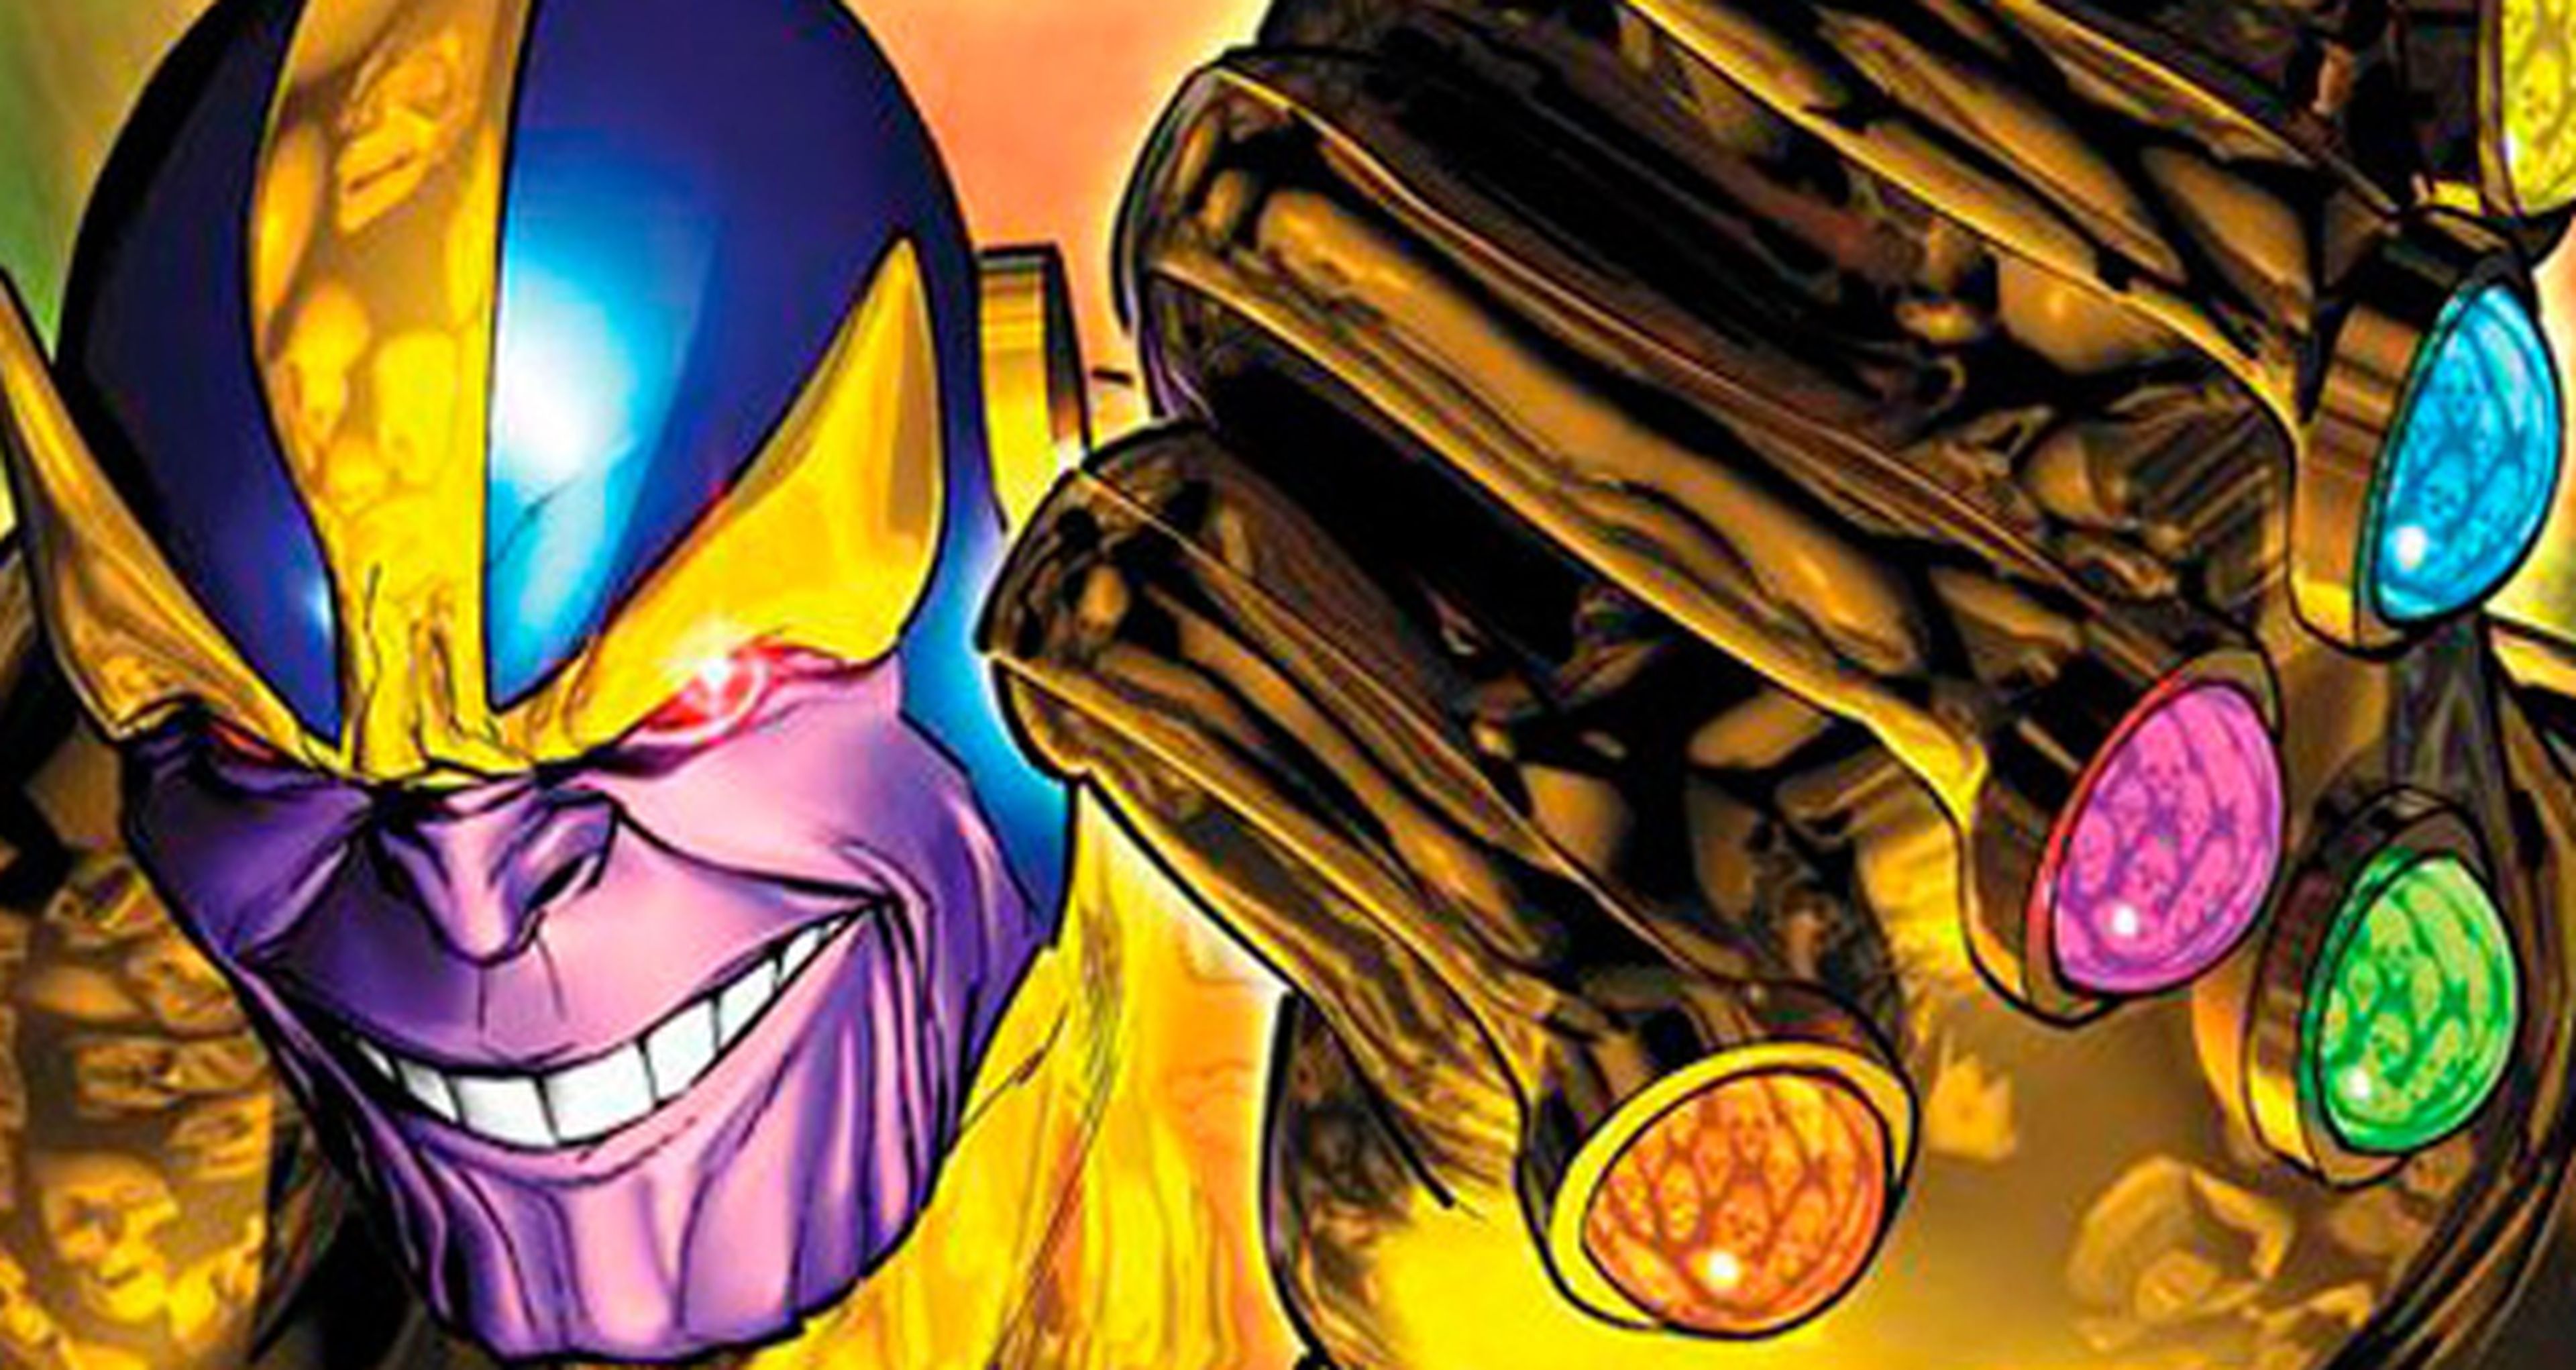 Filtrado el tráiler de Los Vengadores: Infinity War, que muestra a Thanos como villano